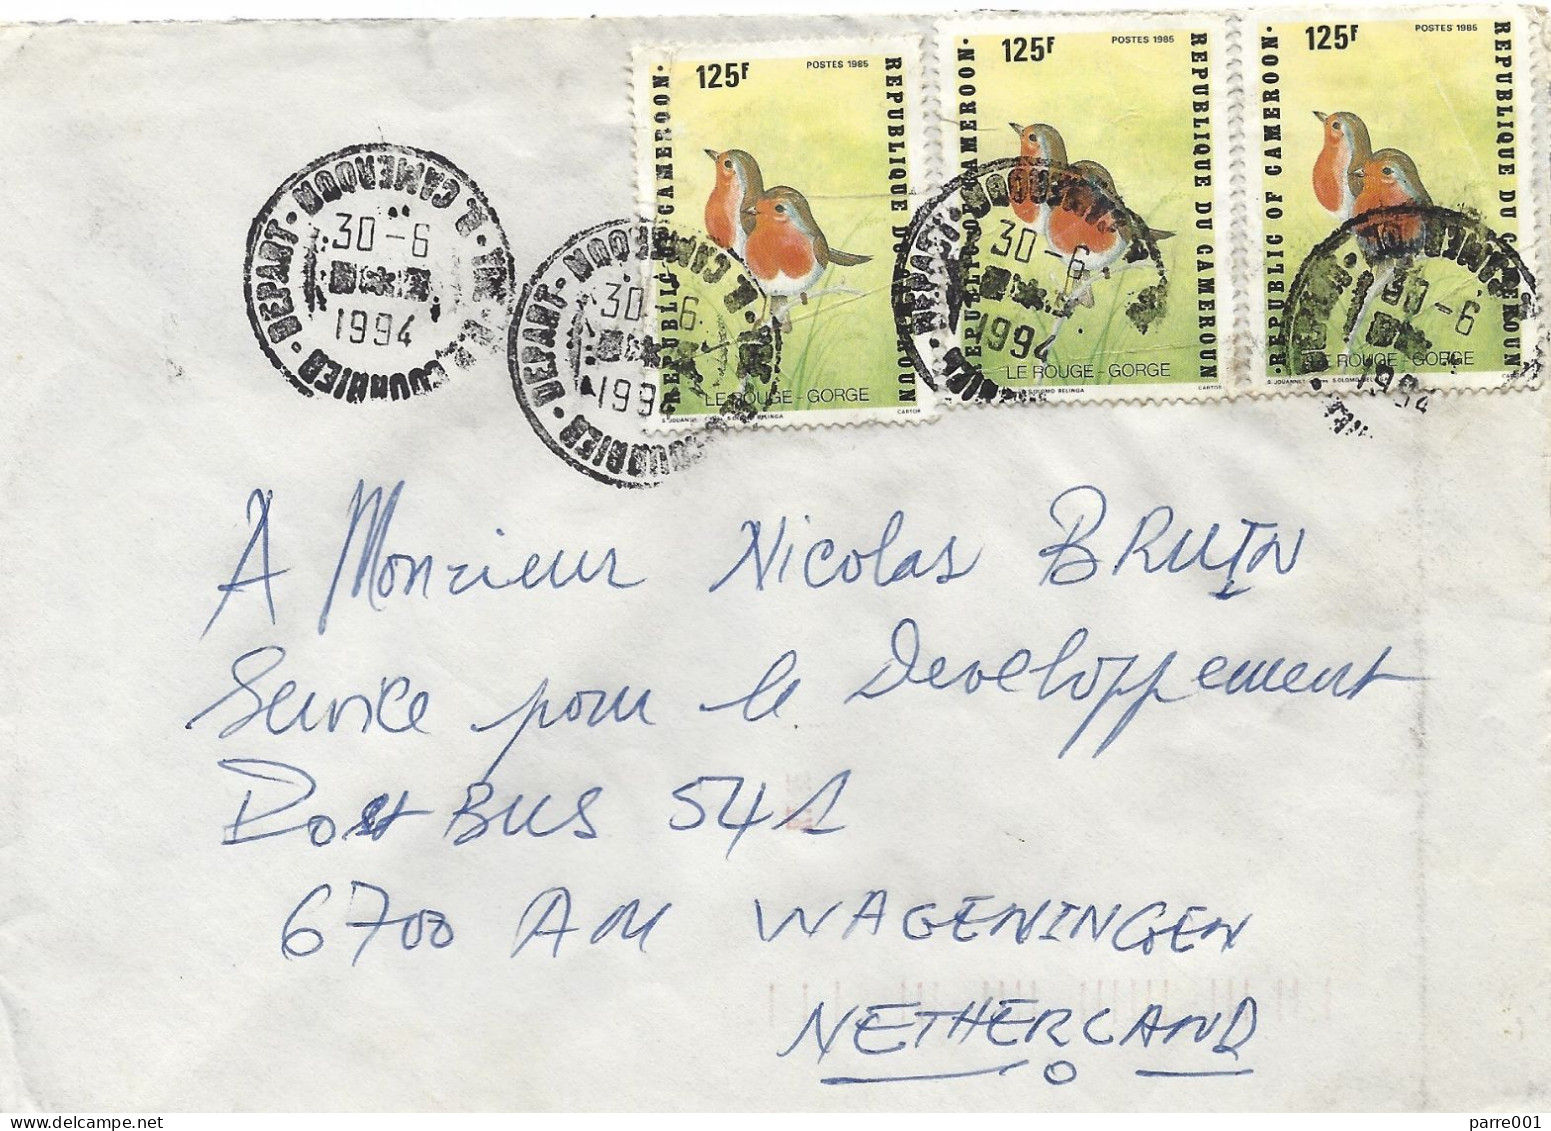 Cameroun Cameroon 1994 Yaounde Robin Erithacus Rubecula Cover - Pájaros Cantores (Passeri)